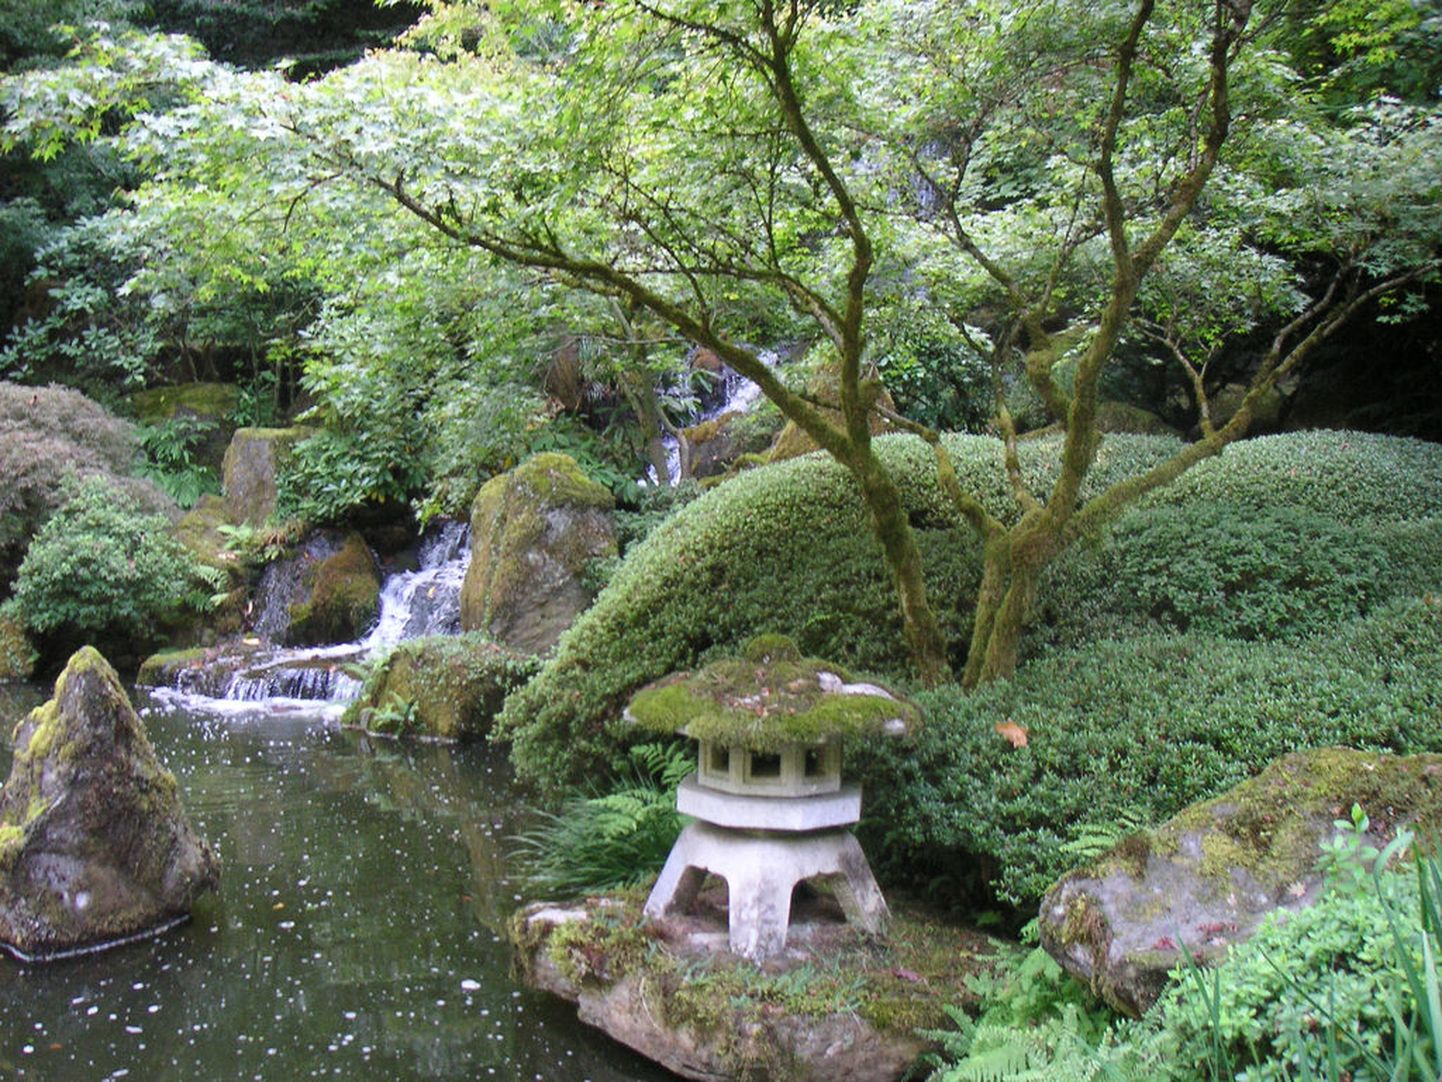 Jaapani aed traditsioonilise kivist laternaga.